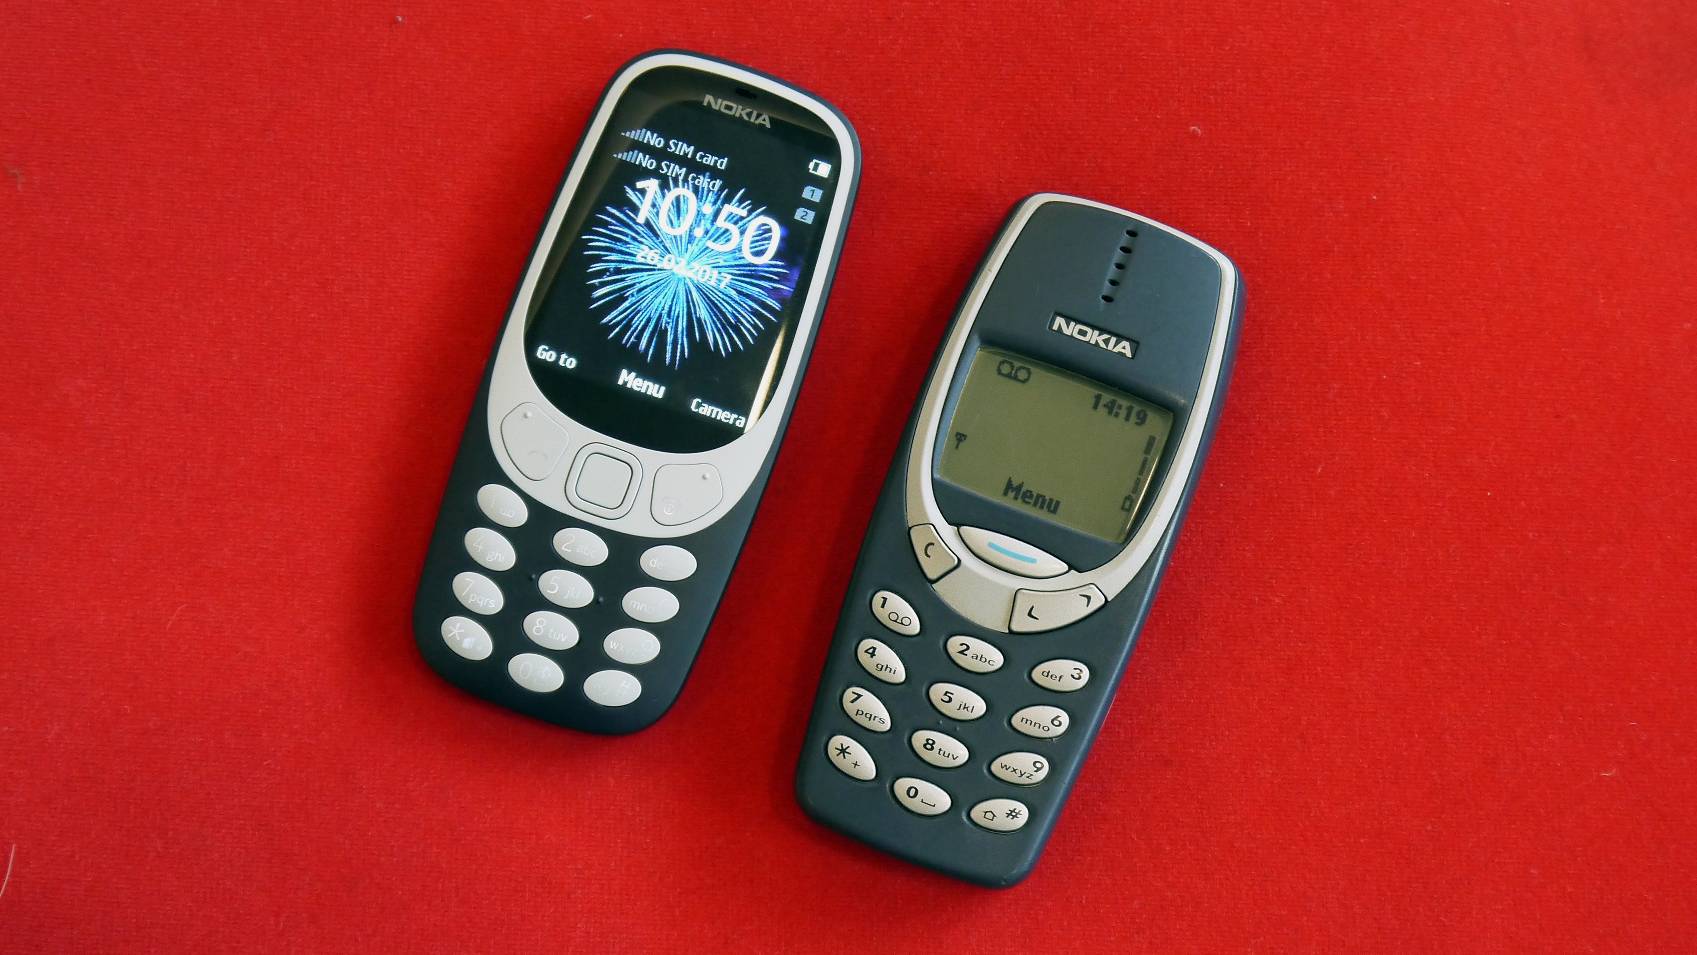 Nokai 3310 old version vs new version